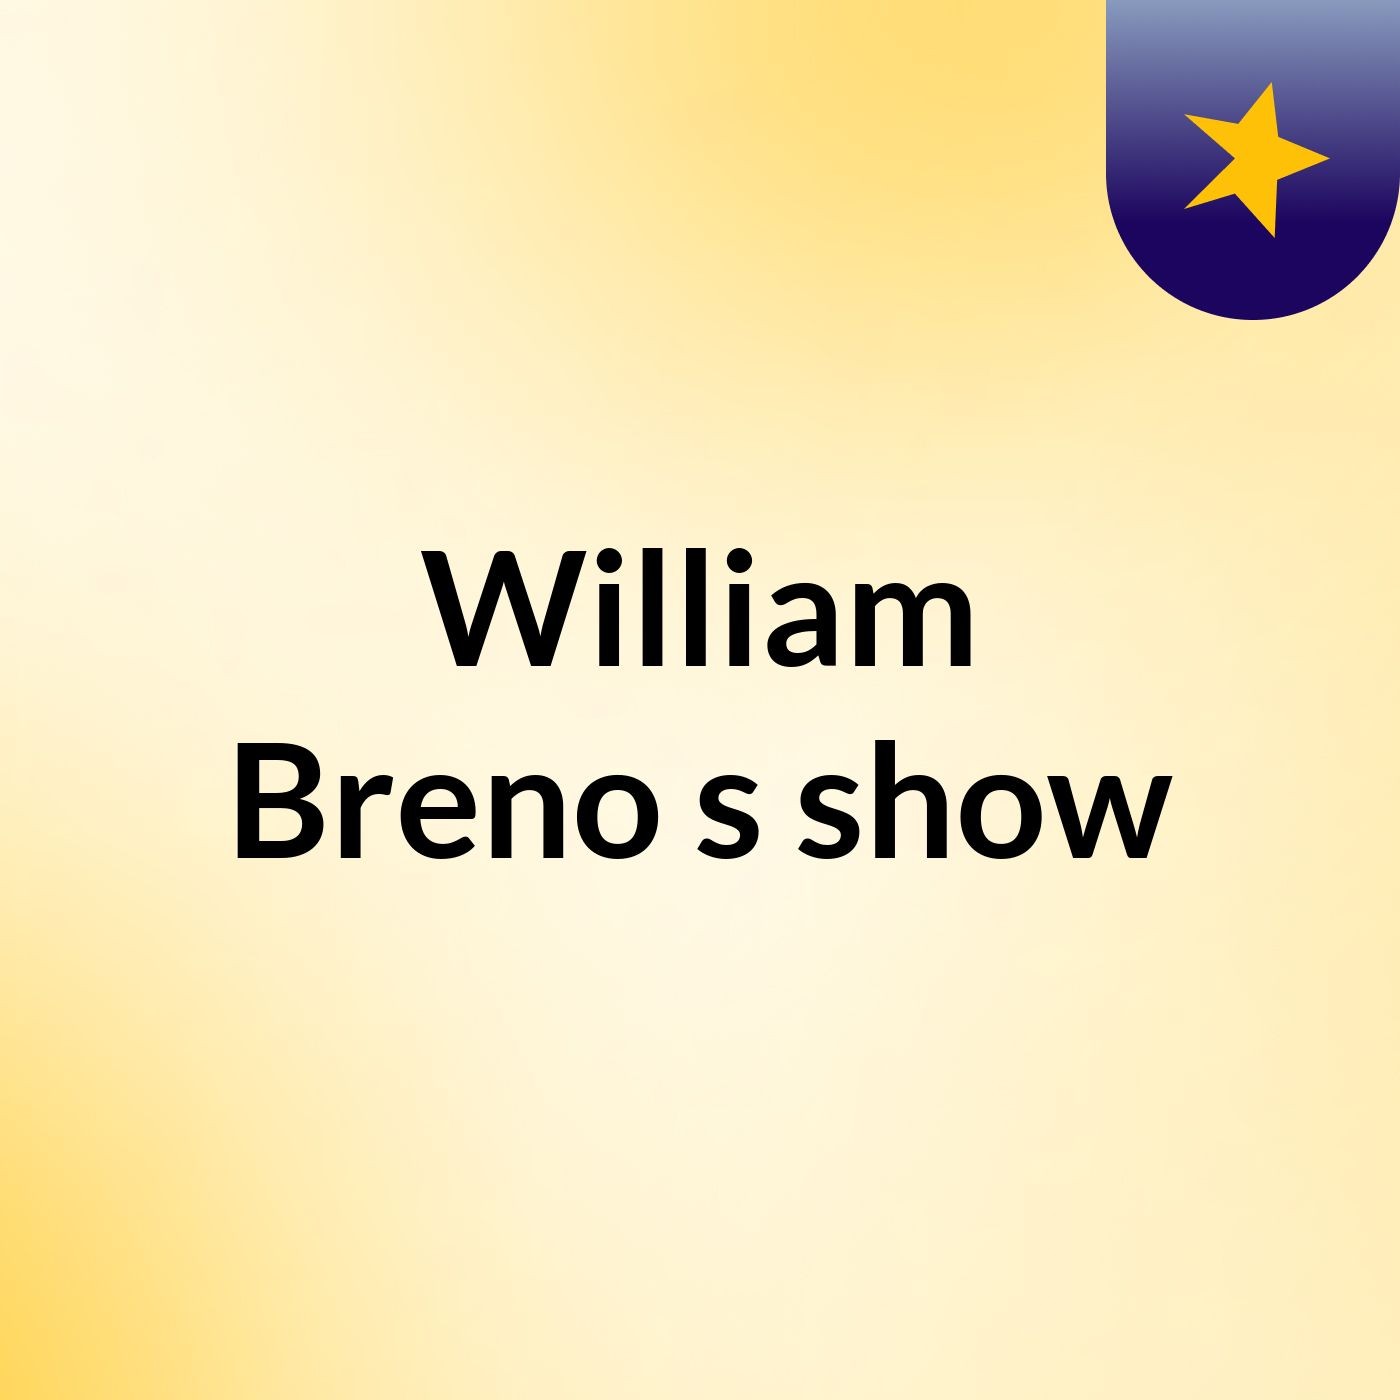 William Breno's show